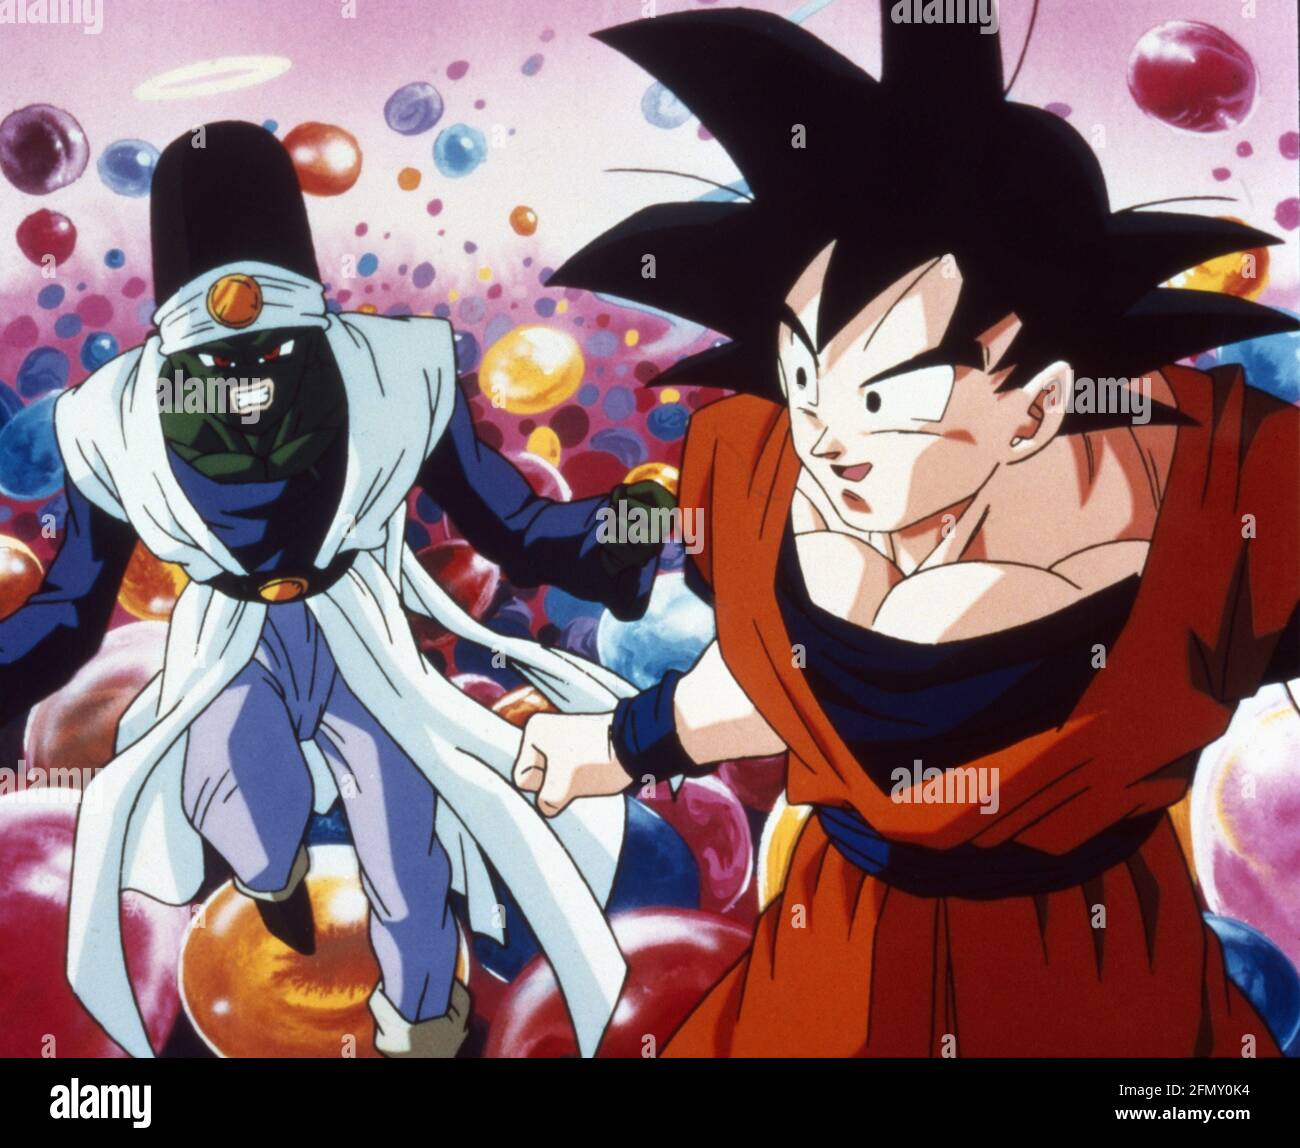 Goku Dragon Ball Z High Resolution Stock Photography And Images Alamy